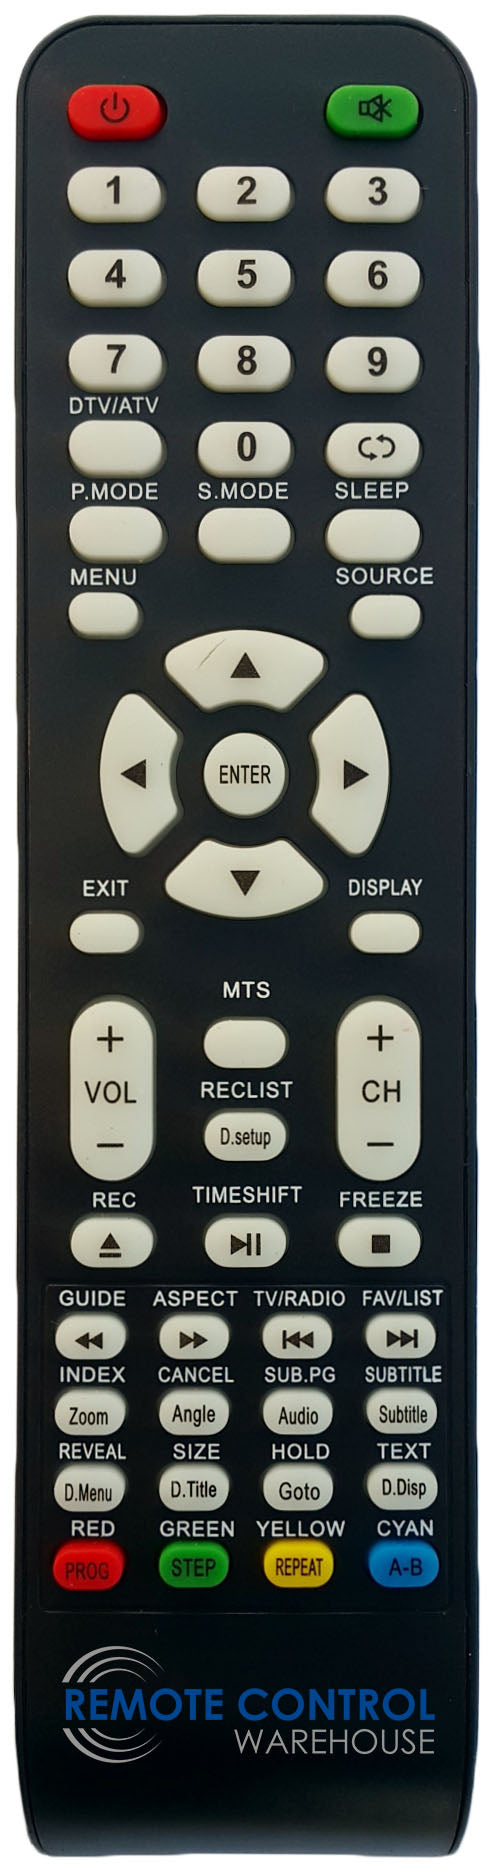 REPLACEMENT NEONIQ REMOTE CONTROL FOR NEONIQ LCD3888HD LCD TV - Remote Control Warehouse